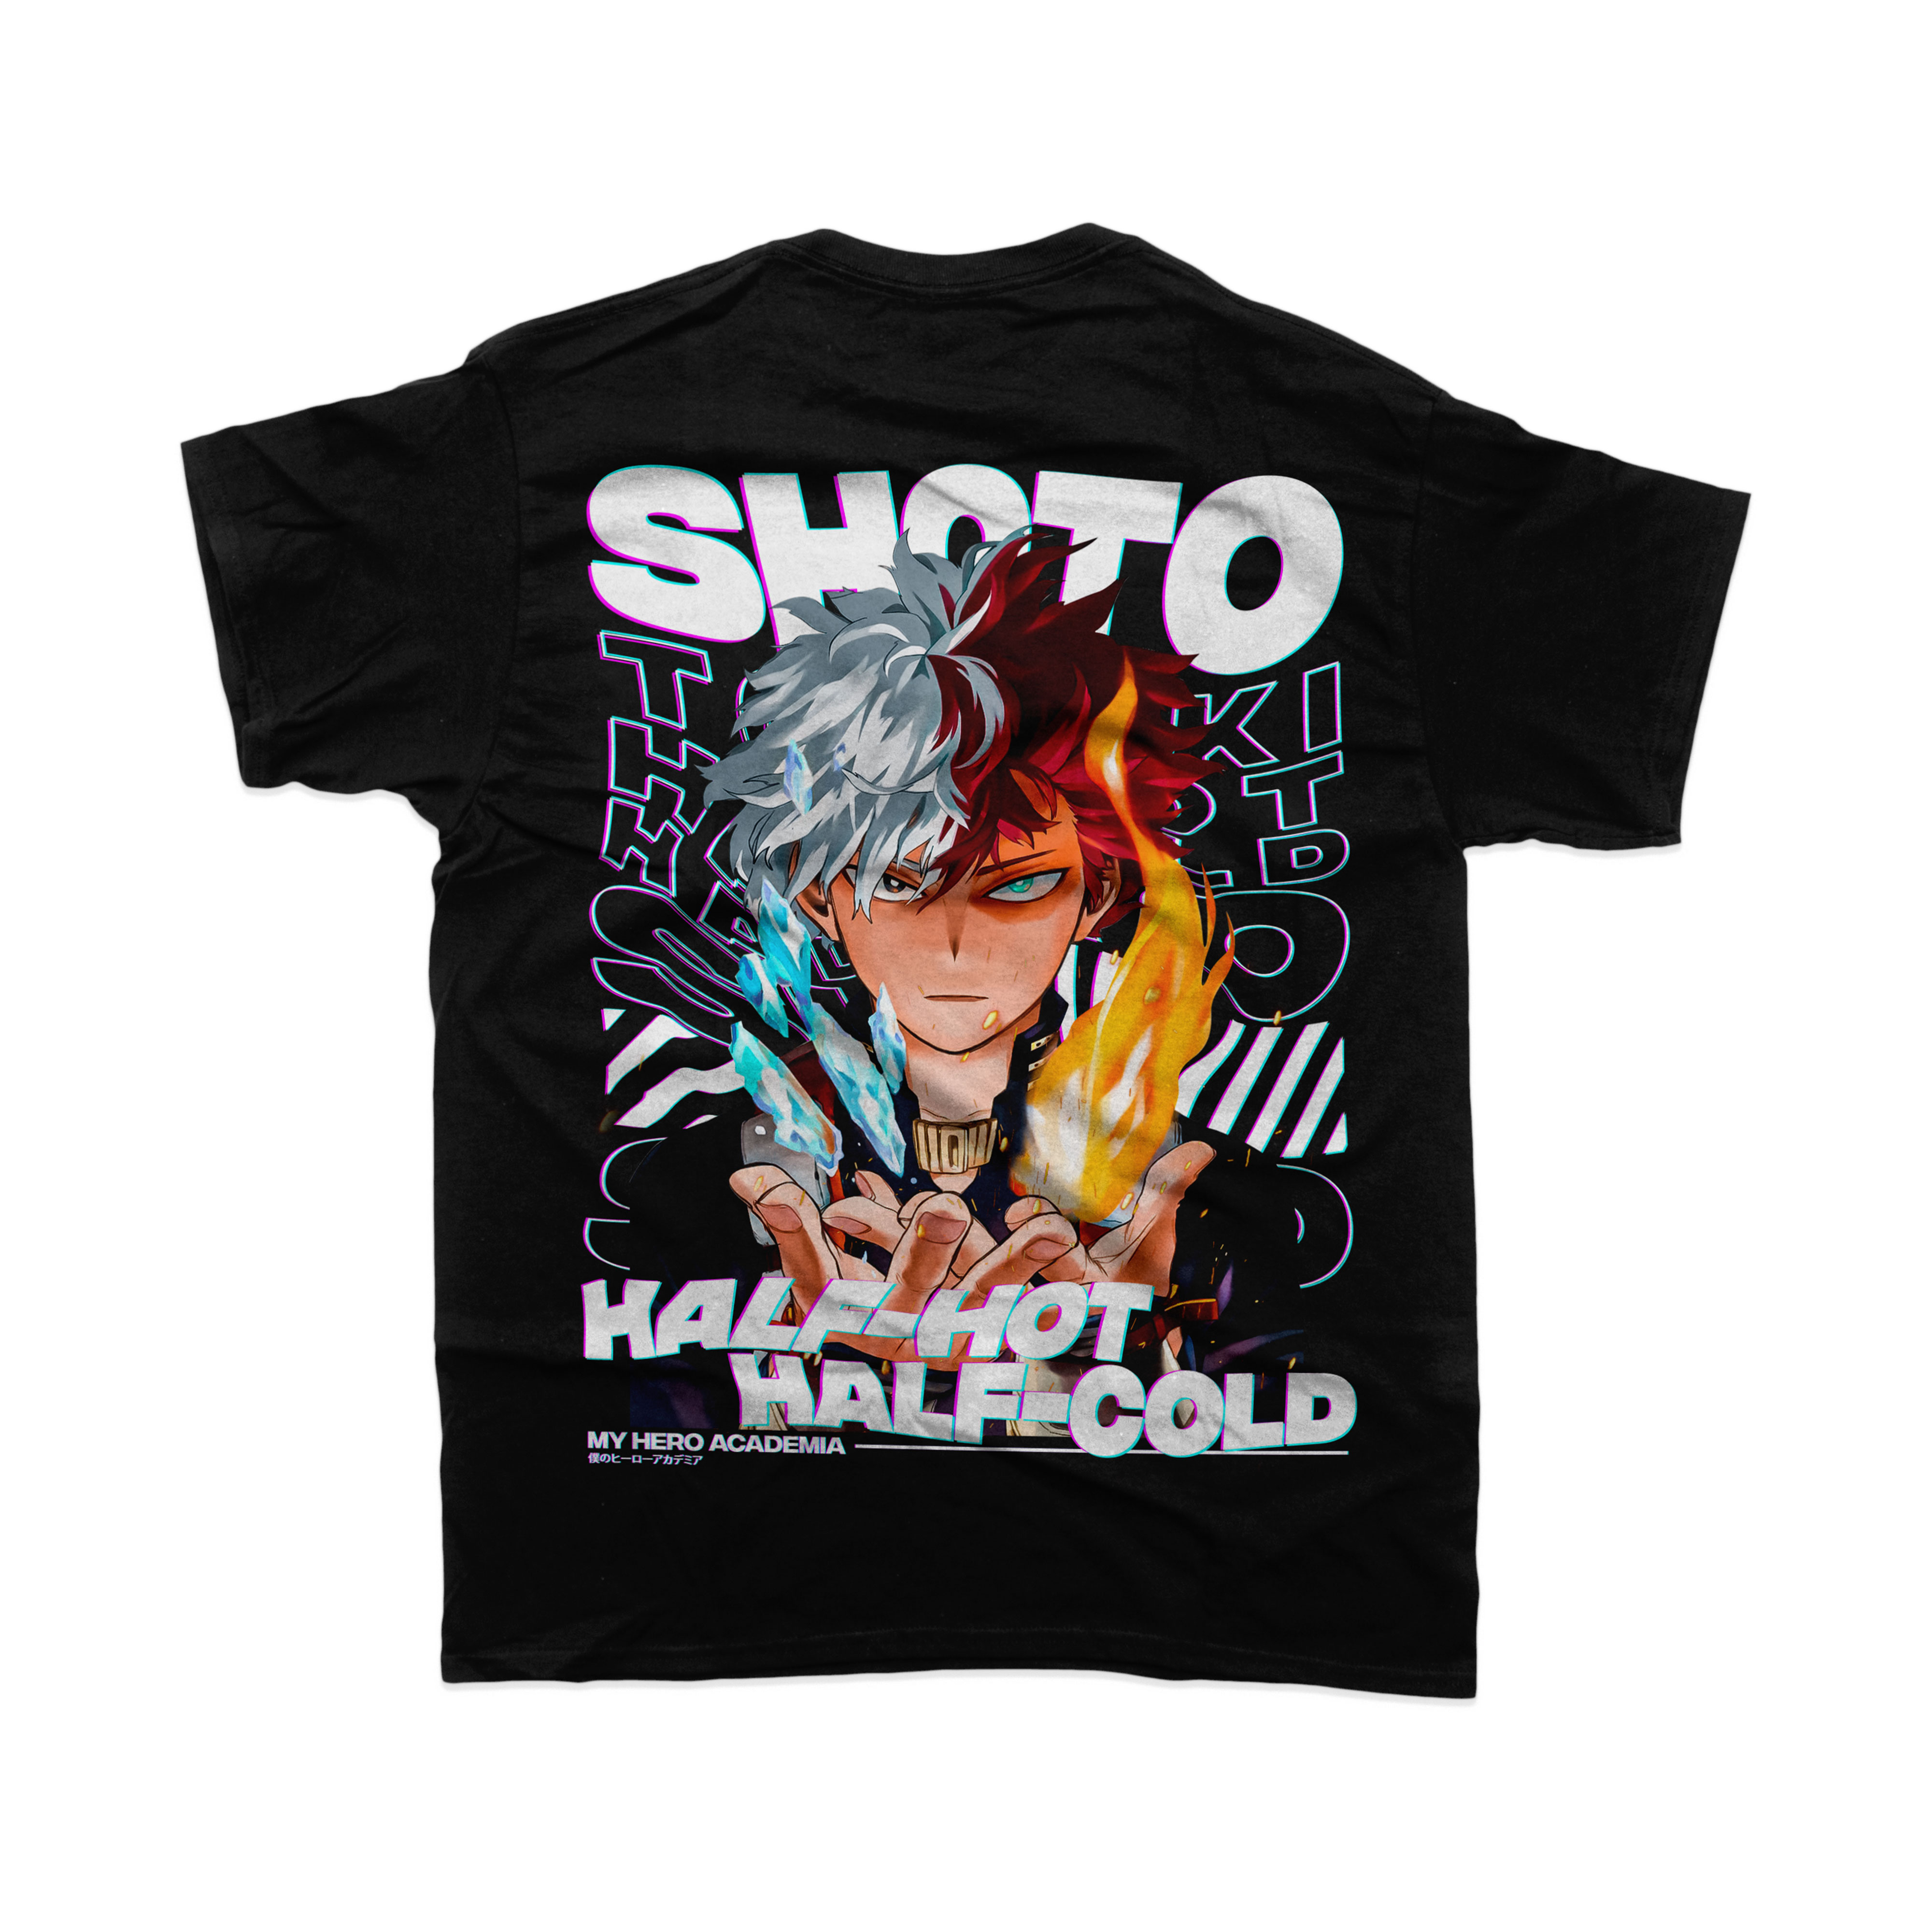 Shoto Todoroki My Hero Academia | T-Shirt